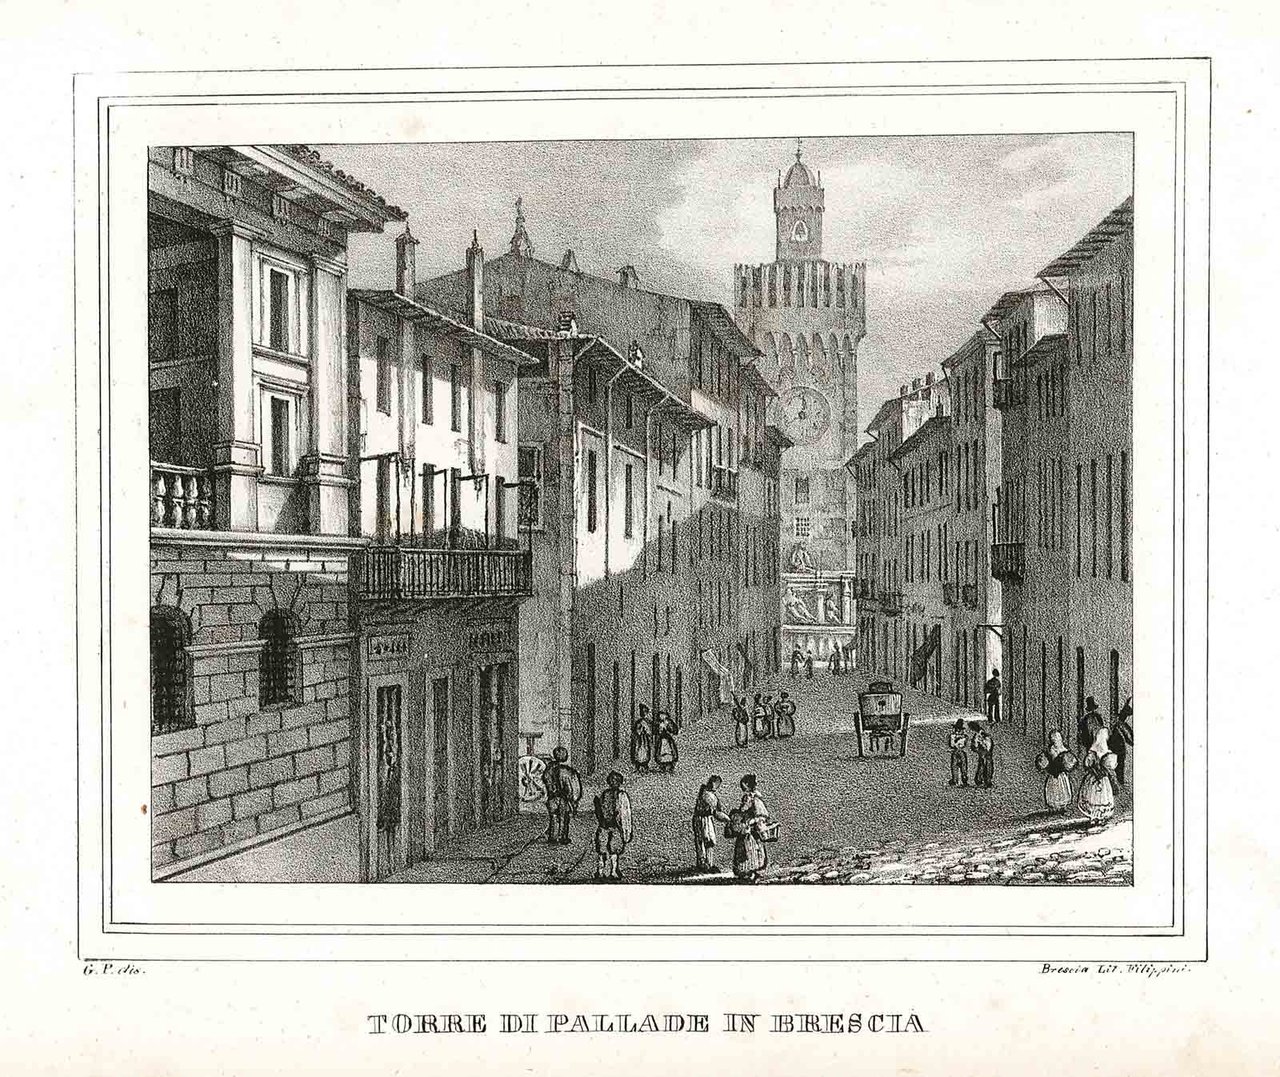 Torre di Pallade in Brescia